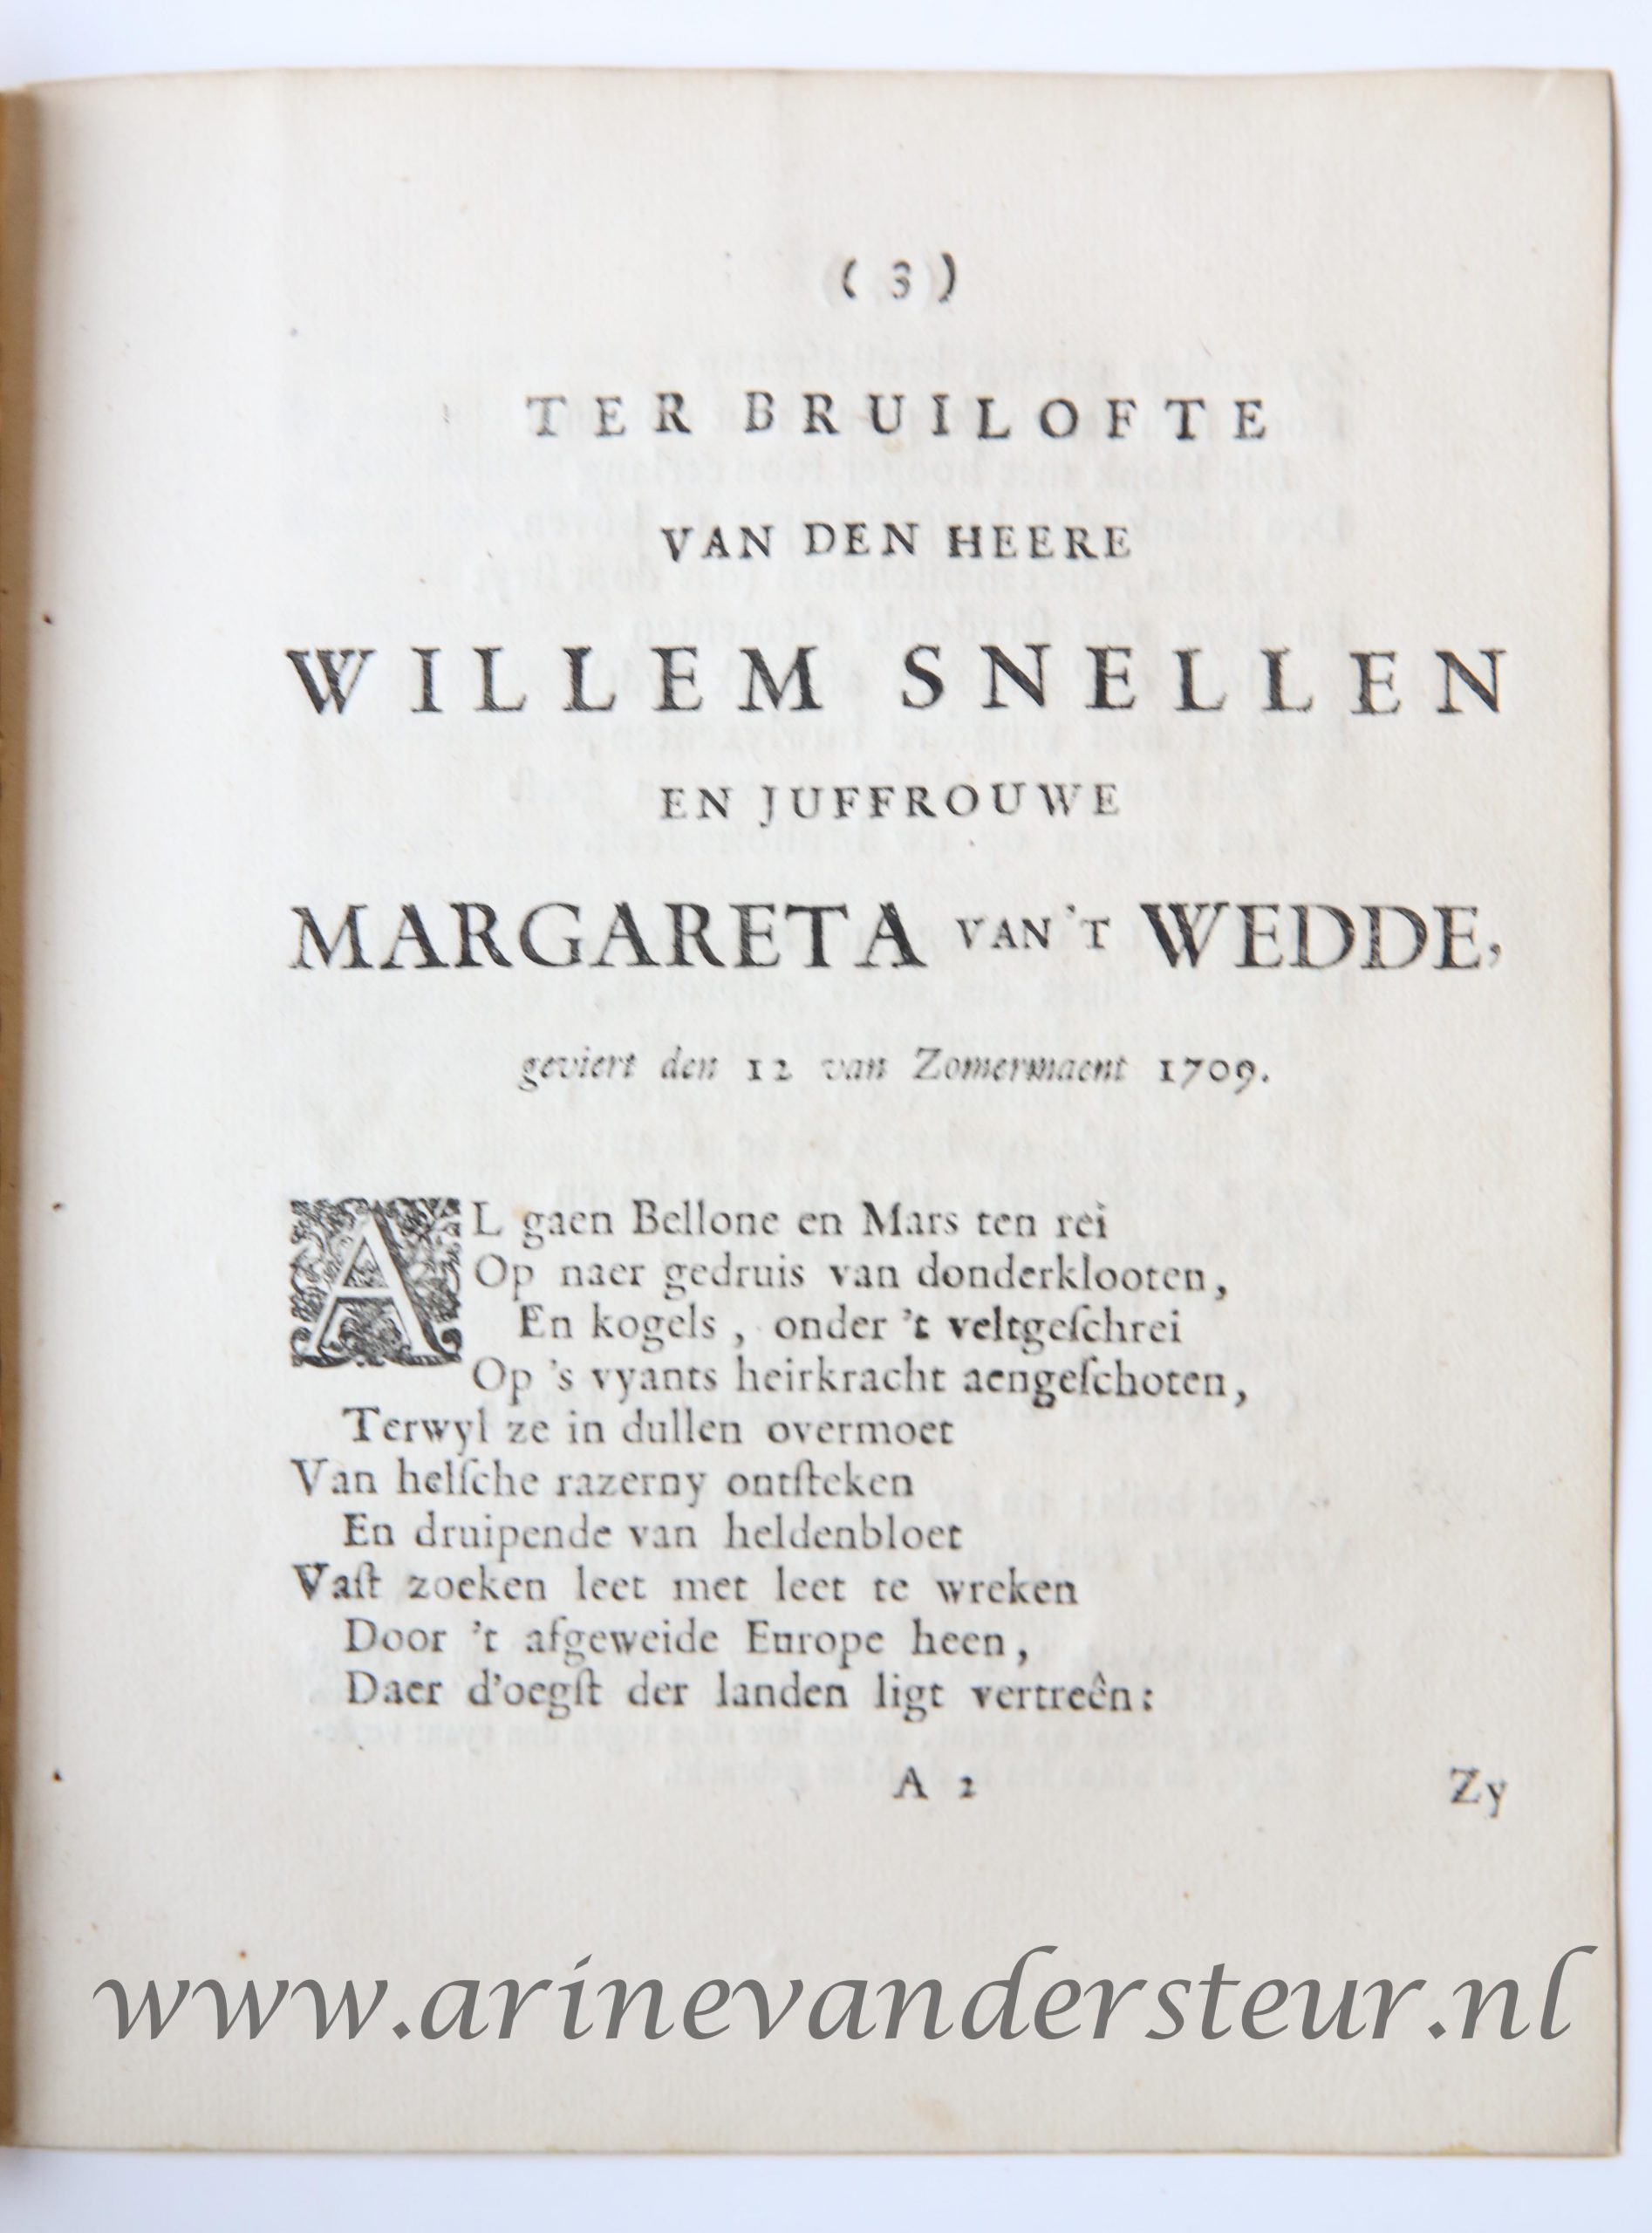  - Ter bruilofte van den heere Willem Snellen en juffrouwe Margareta Van 't wedde, geviert [te Rotterdam den 12den van Zomermaent 1709. z.p., z.j. 4: 8 p.